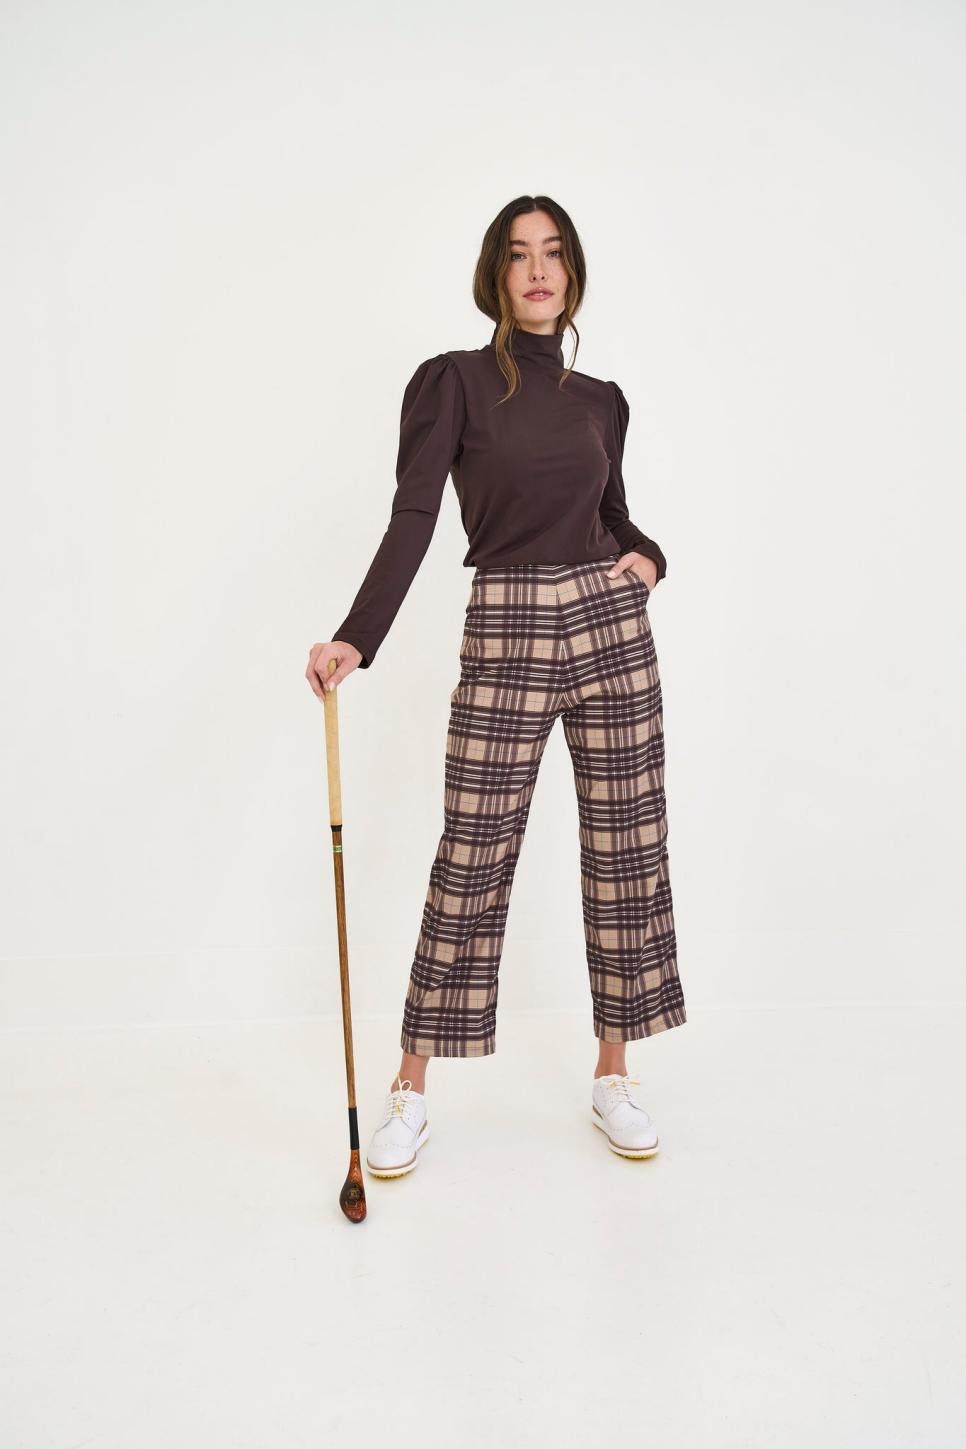 rx-byrdiegolfsocialwearbyrdie-golf-social-wear-kitty-trouser.jpeg